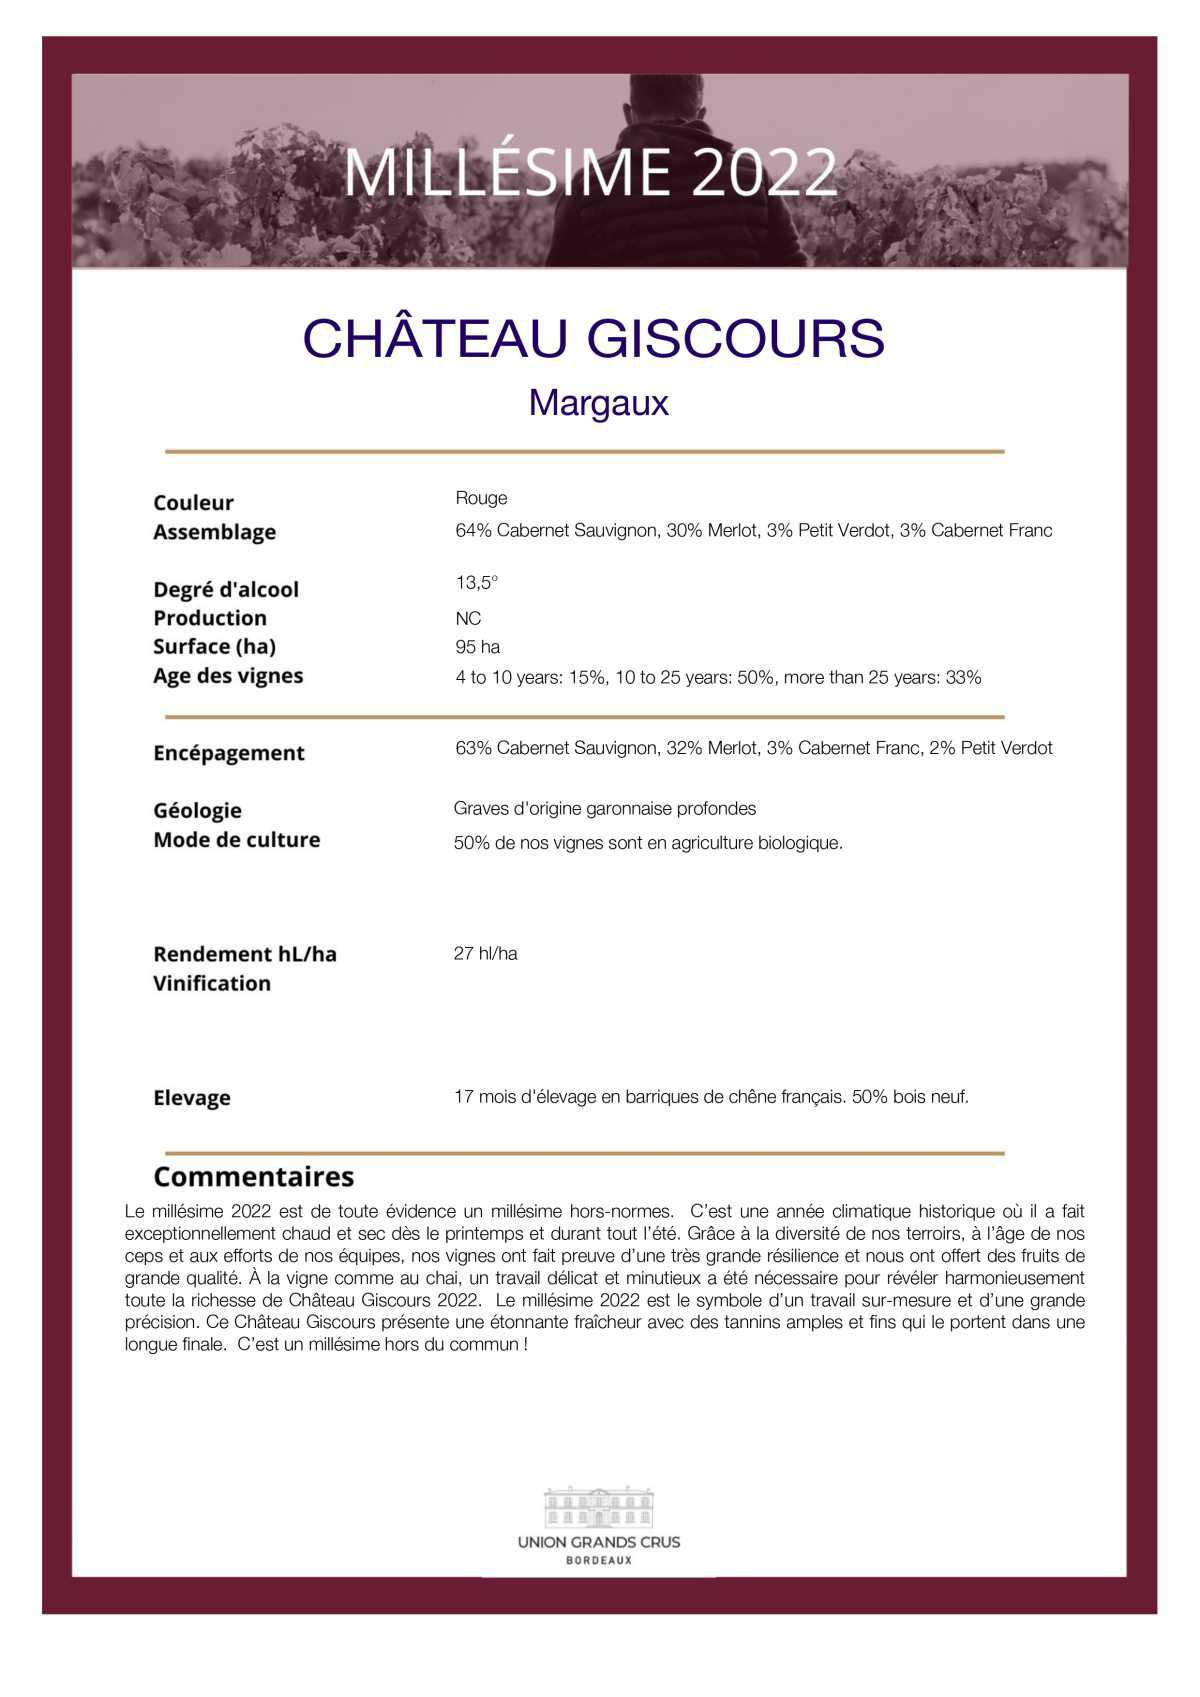  Château Giscours